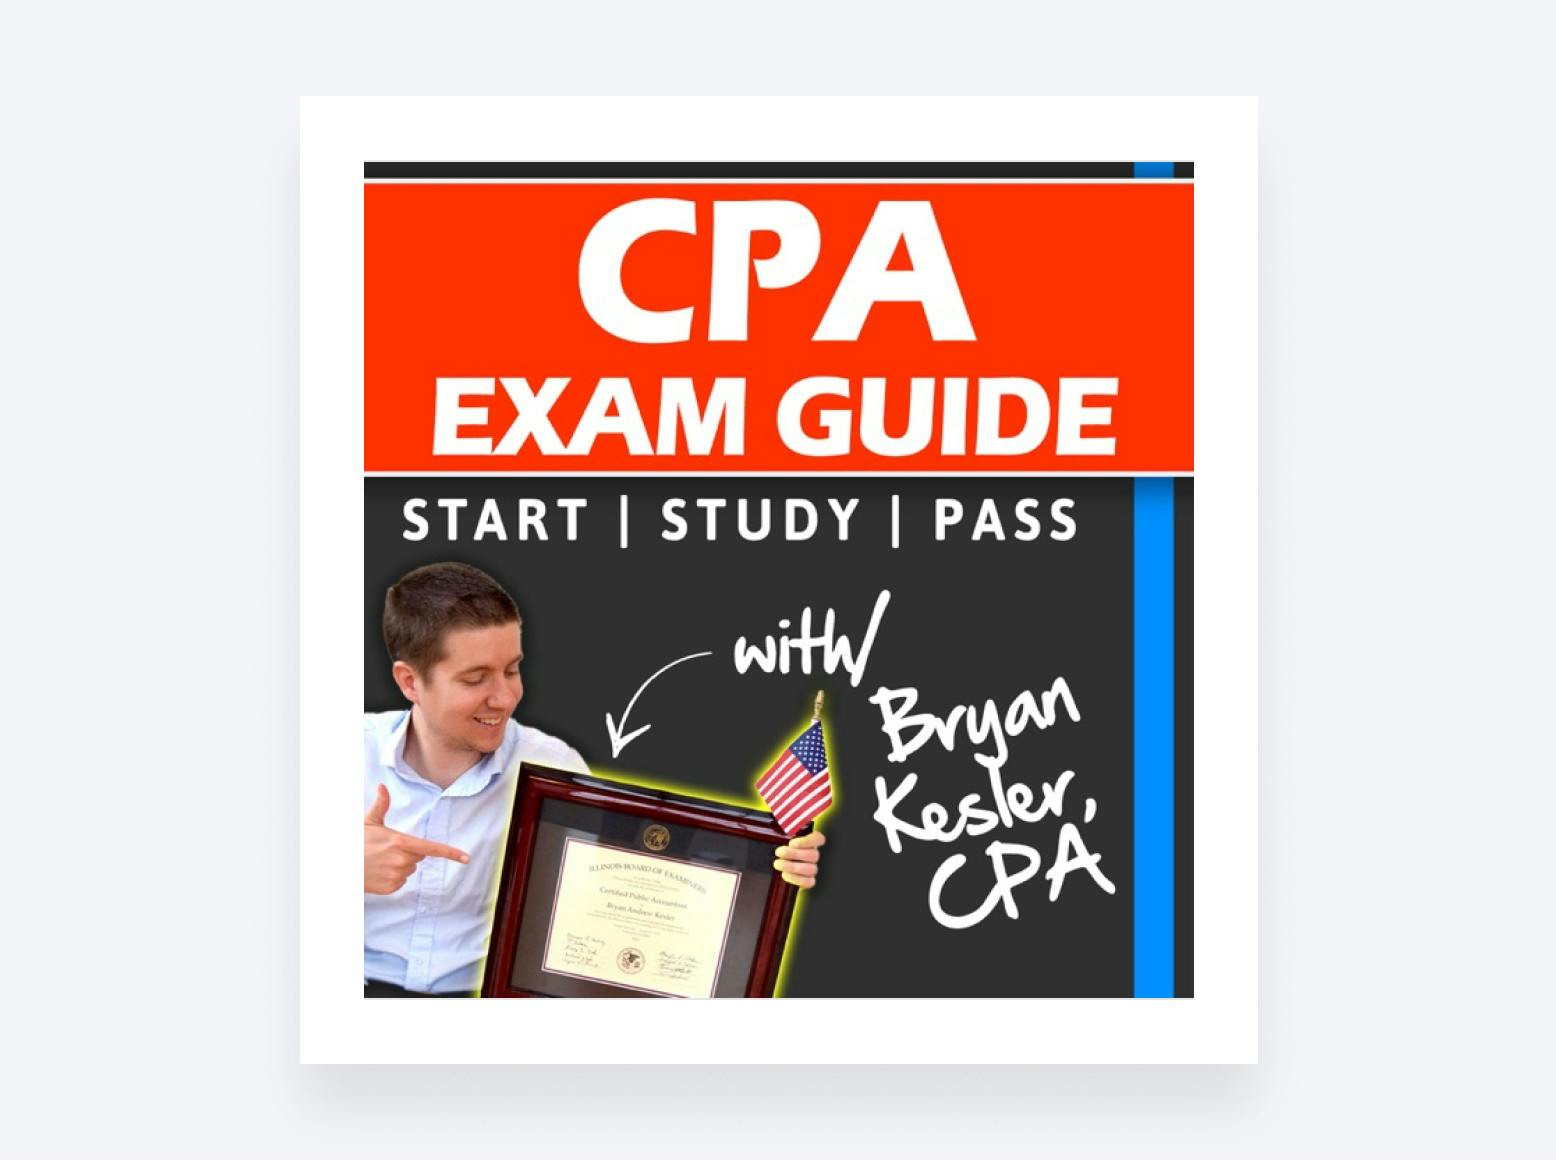 CPA Exam Guide podcast